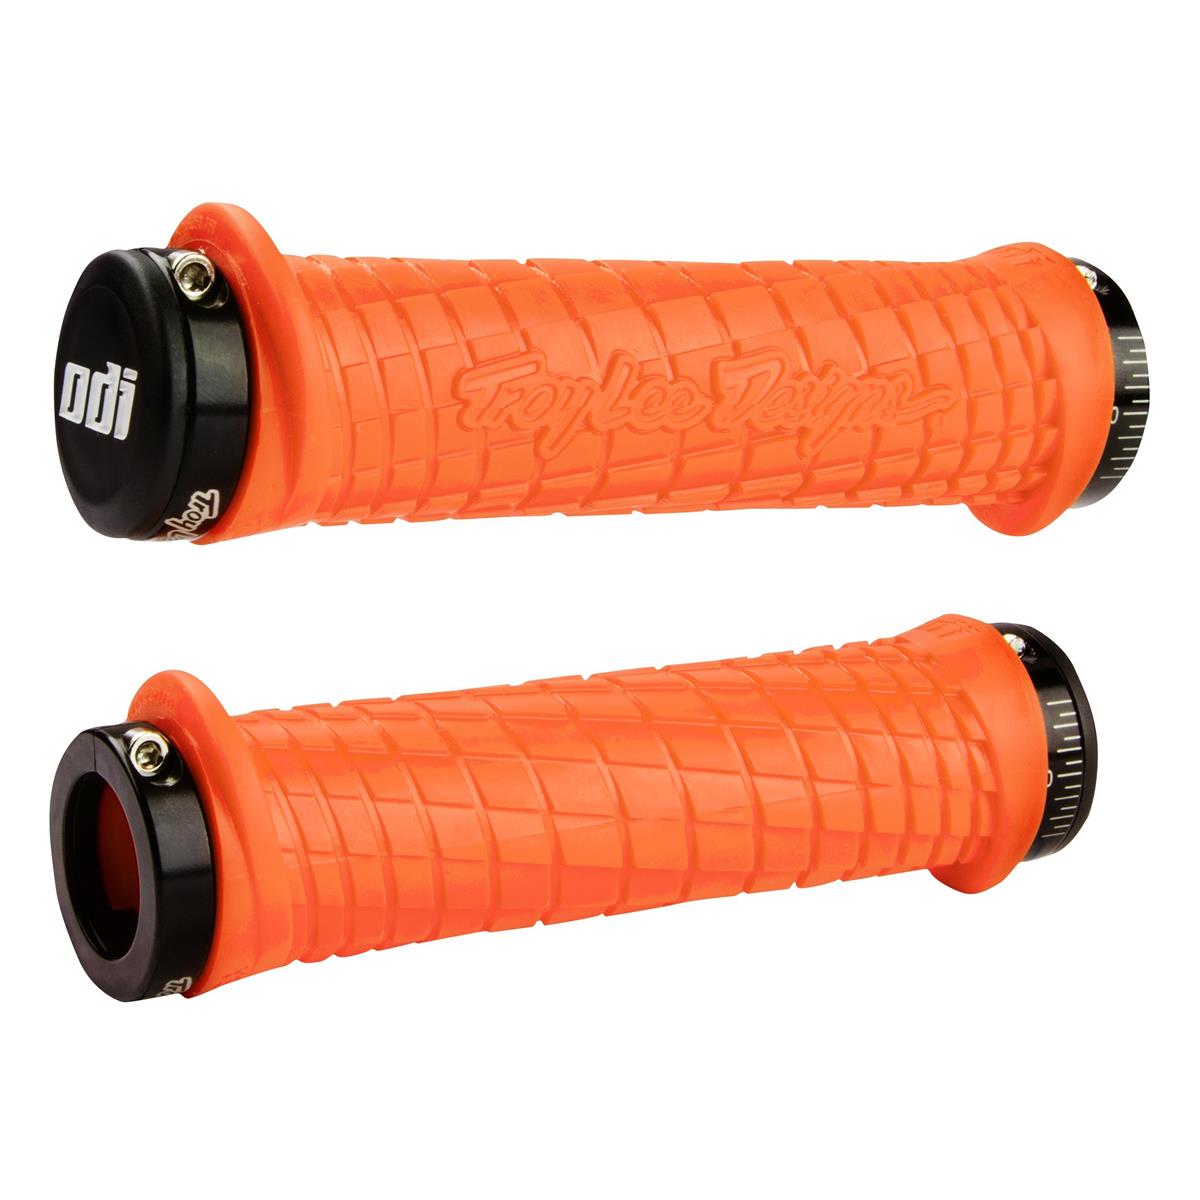 ODI MTB Grips Bonus Pack TLD Lock-On Orange/Black, 130 mm